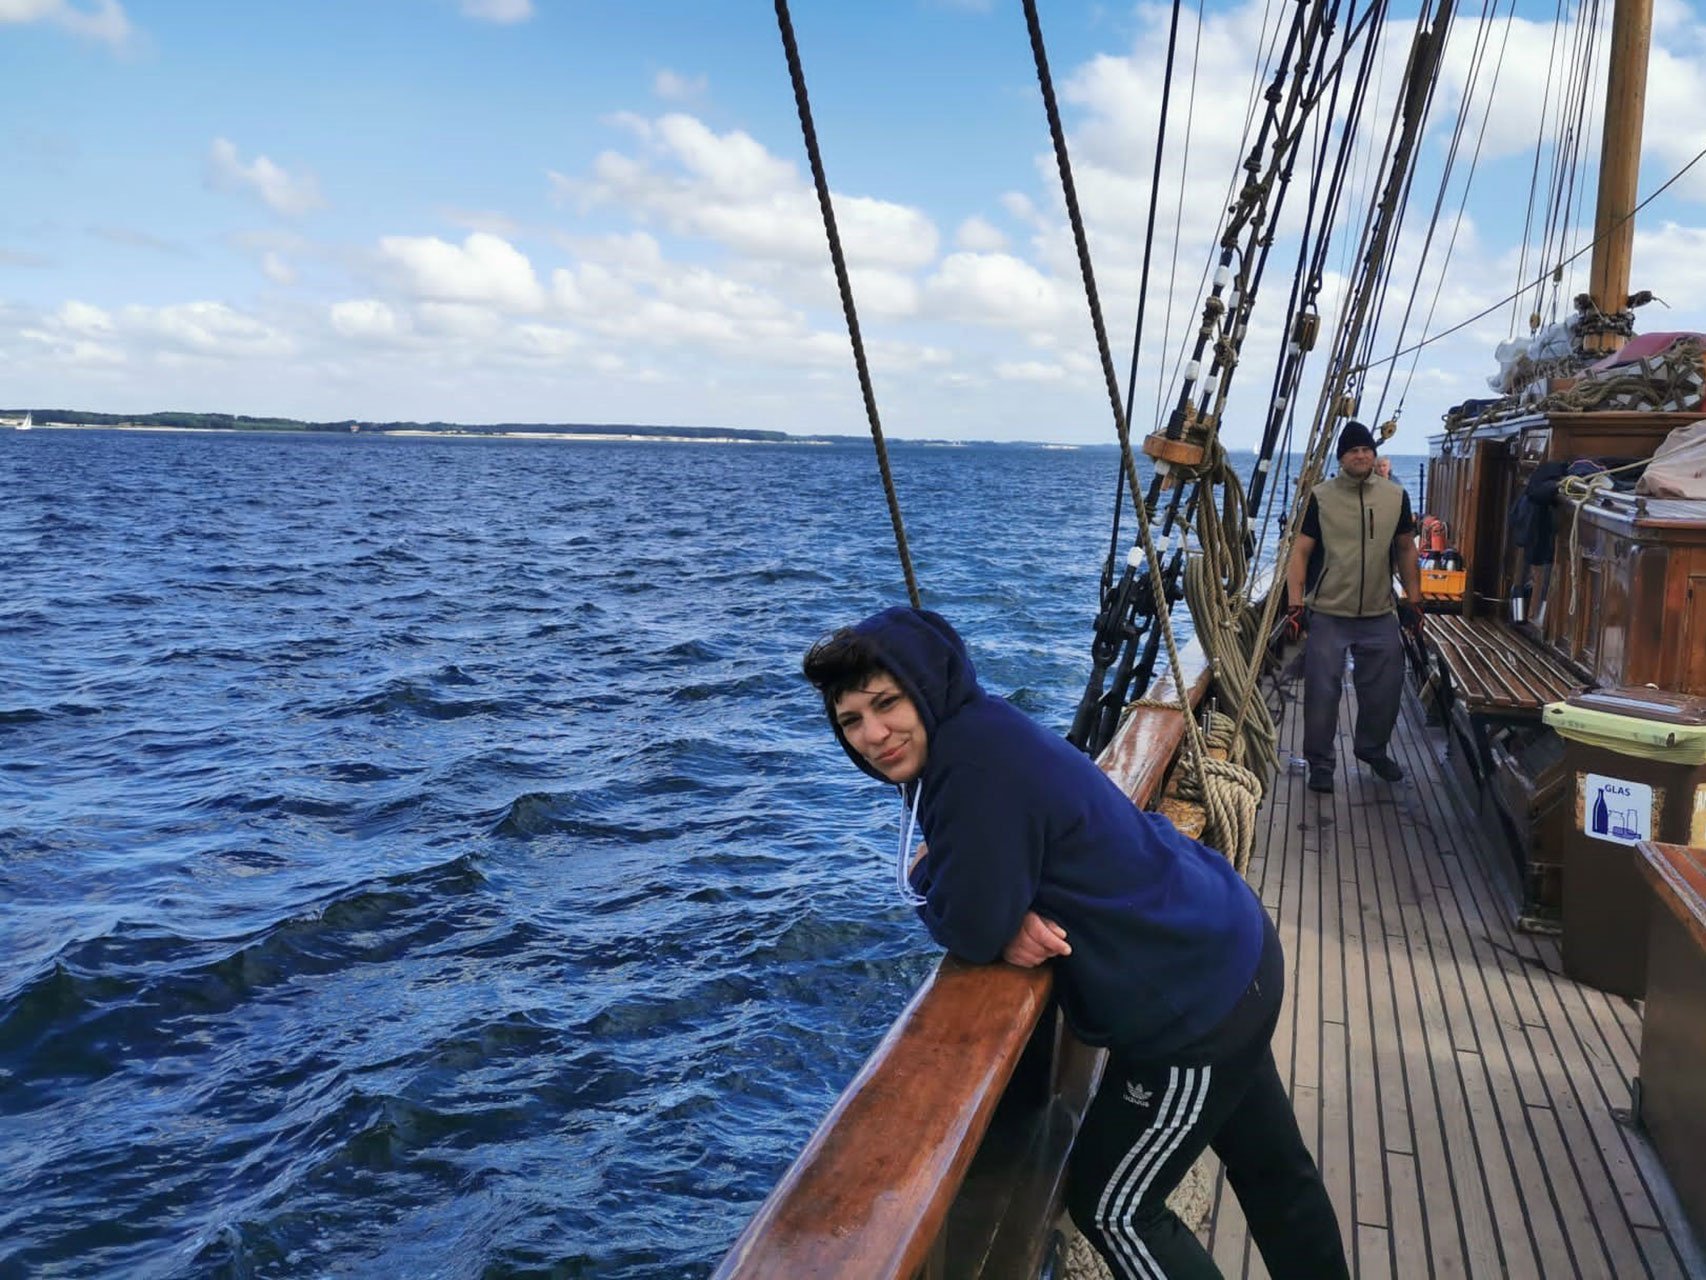 Eine junge Frau lehnt an der Reeling eines Segelschiffs